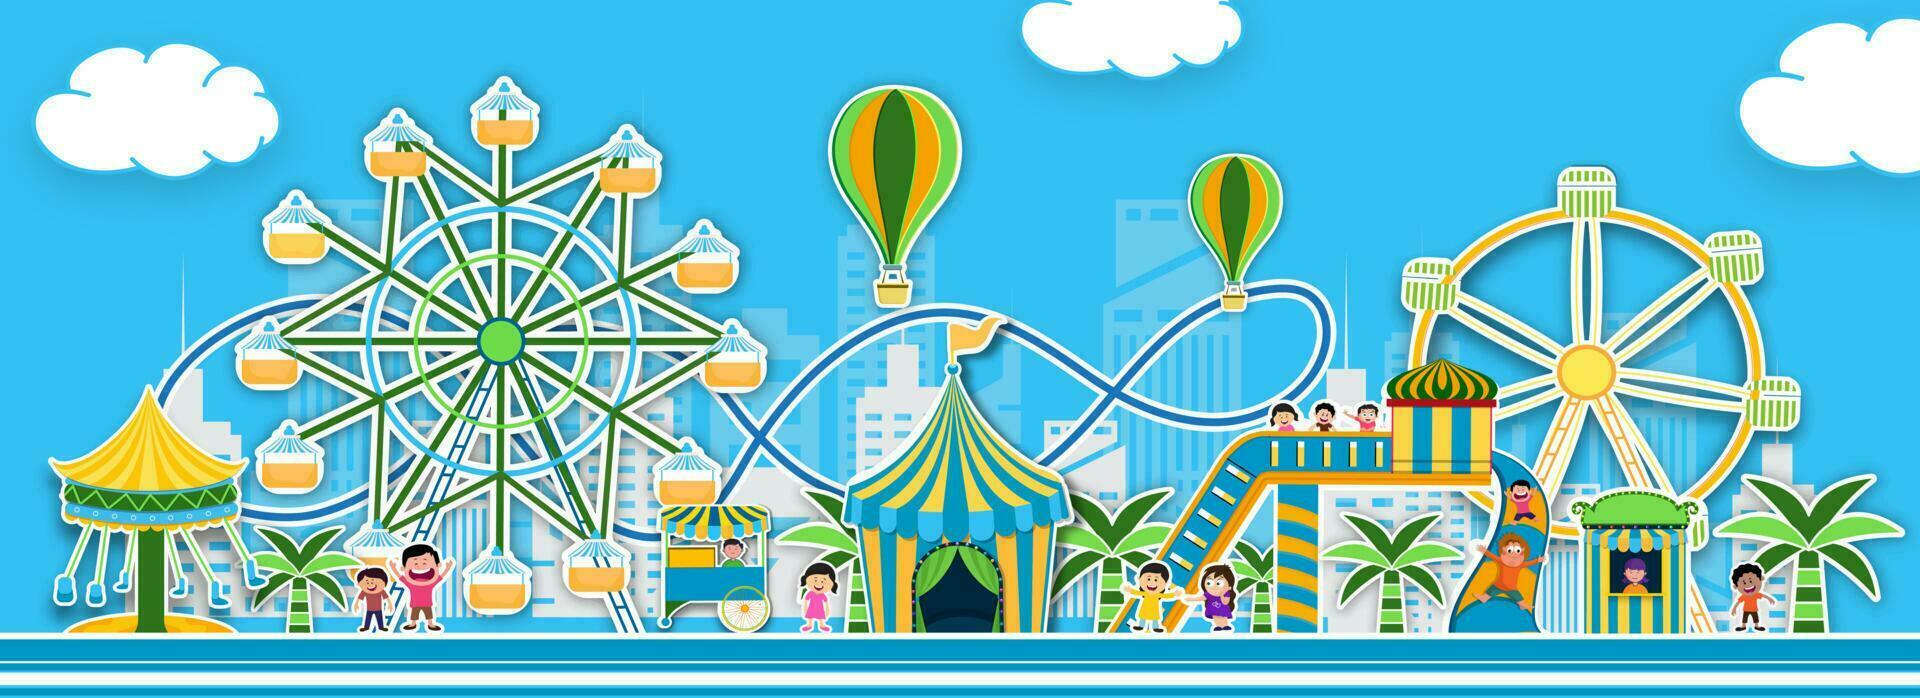 sticker stijl thema park visie met illustratie van draaimolens, rol kustvaarder en heet lucht ballonnen voor pret eerlijk carnaval concept. vector